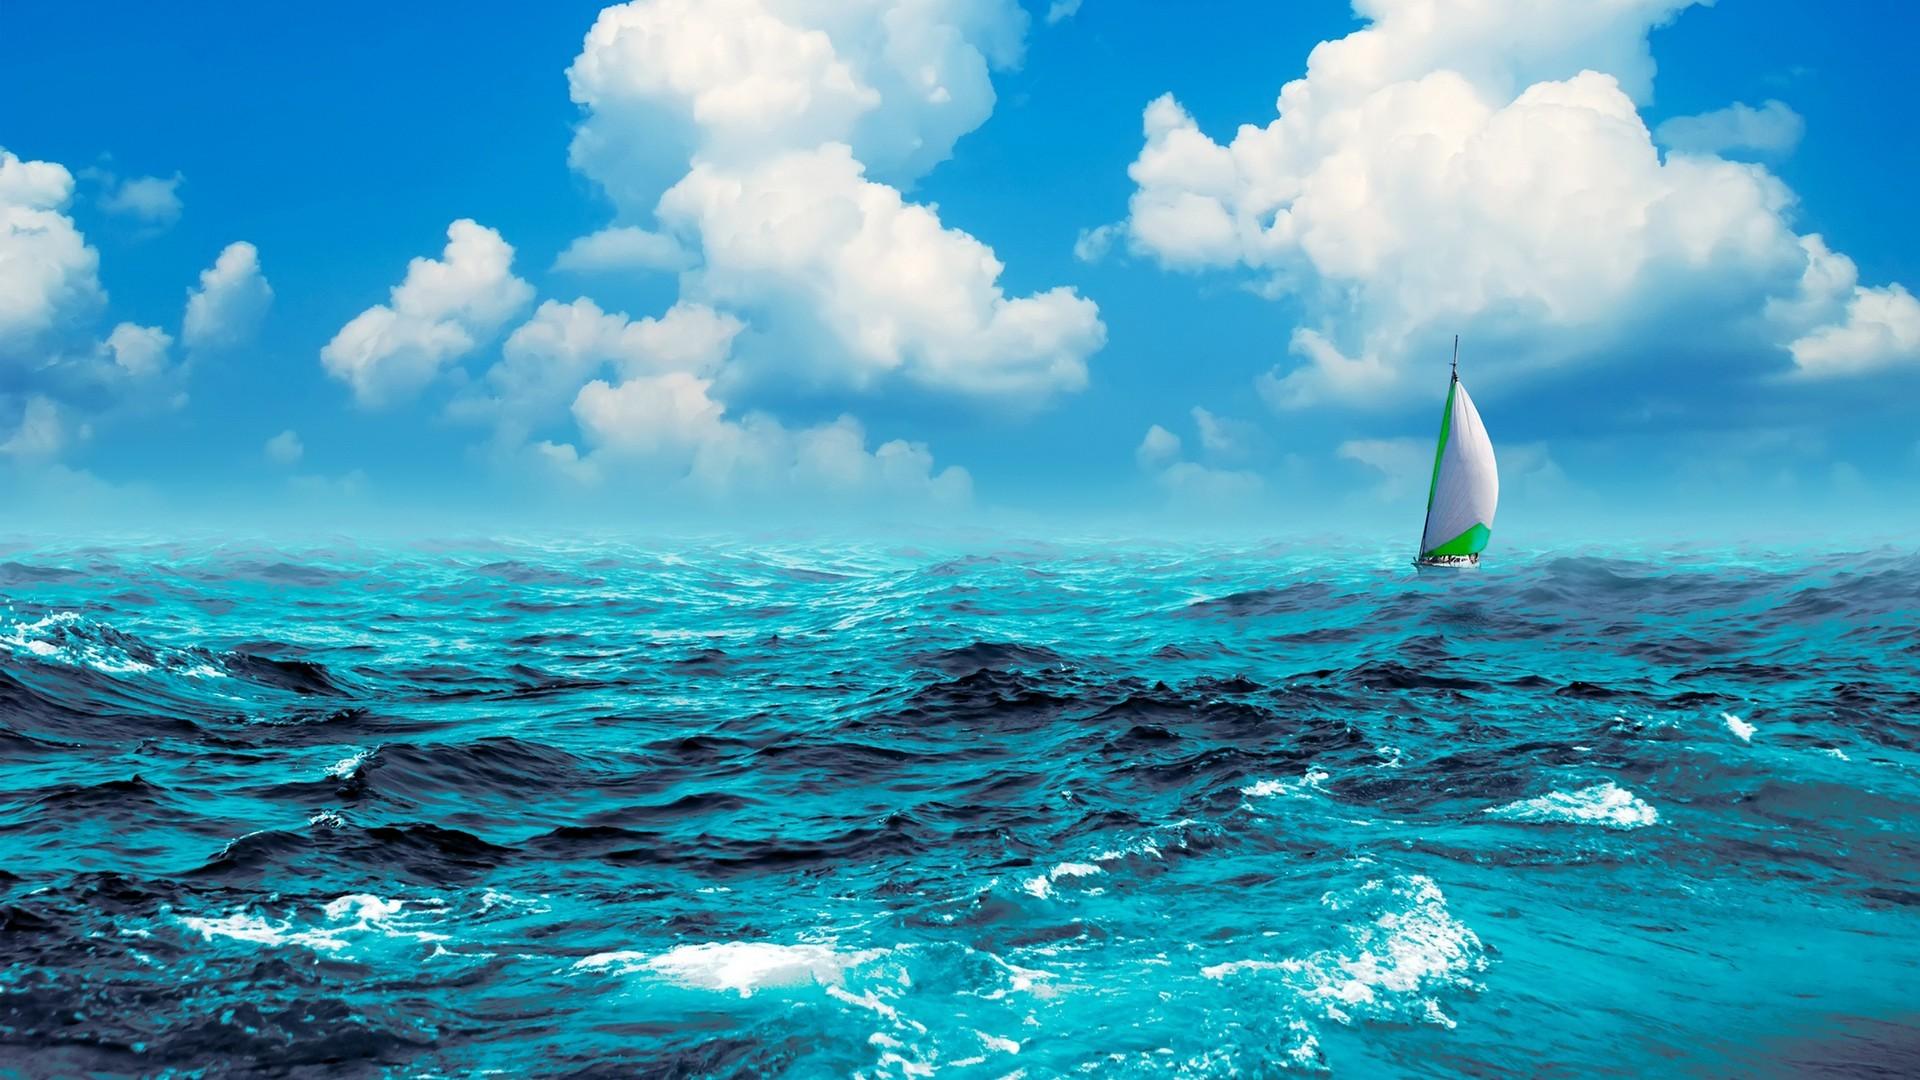 sea wallpaper,sky,water,nature,ocean,blue